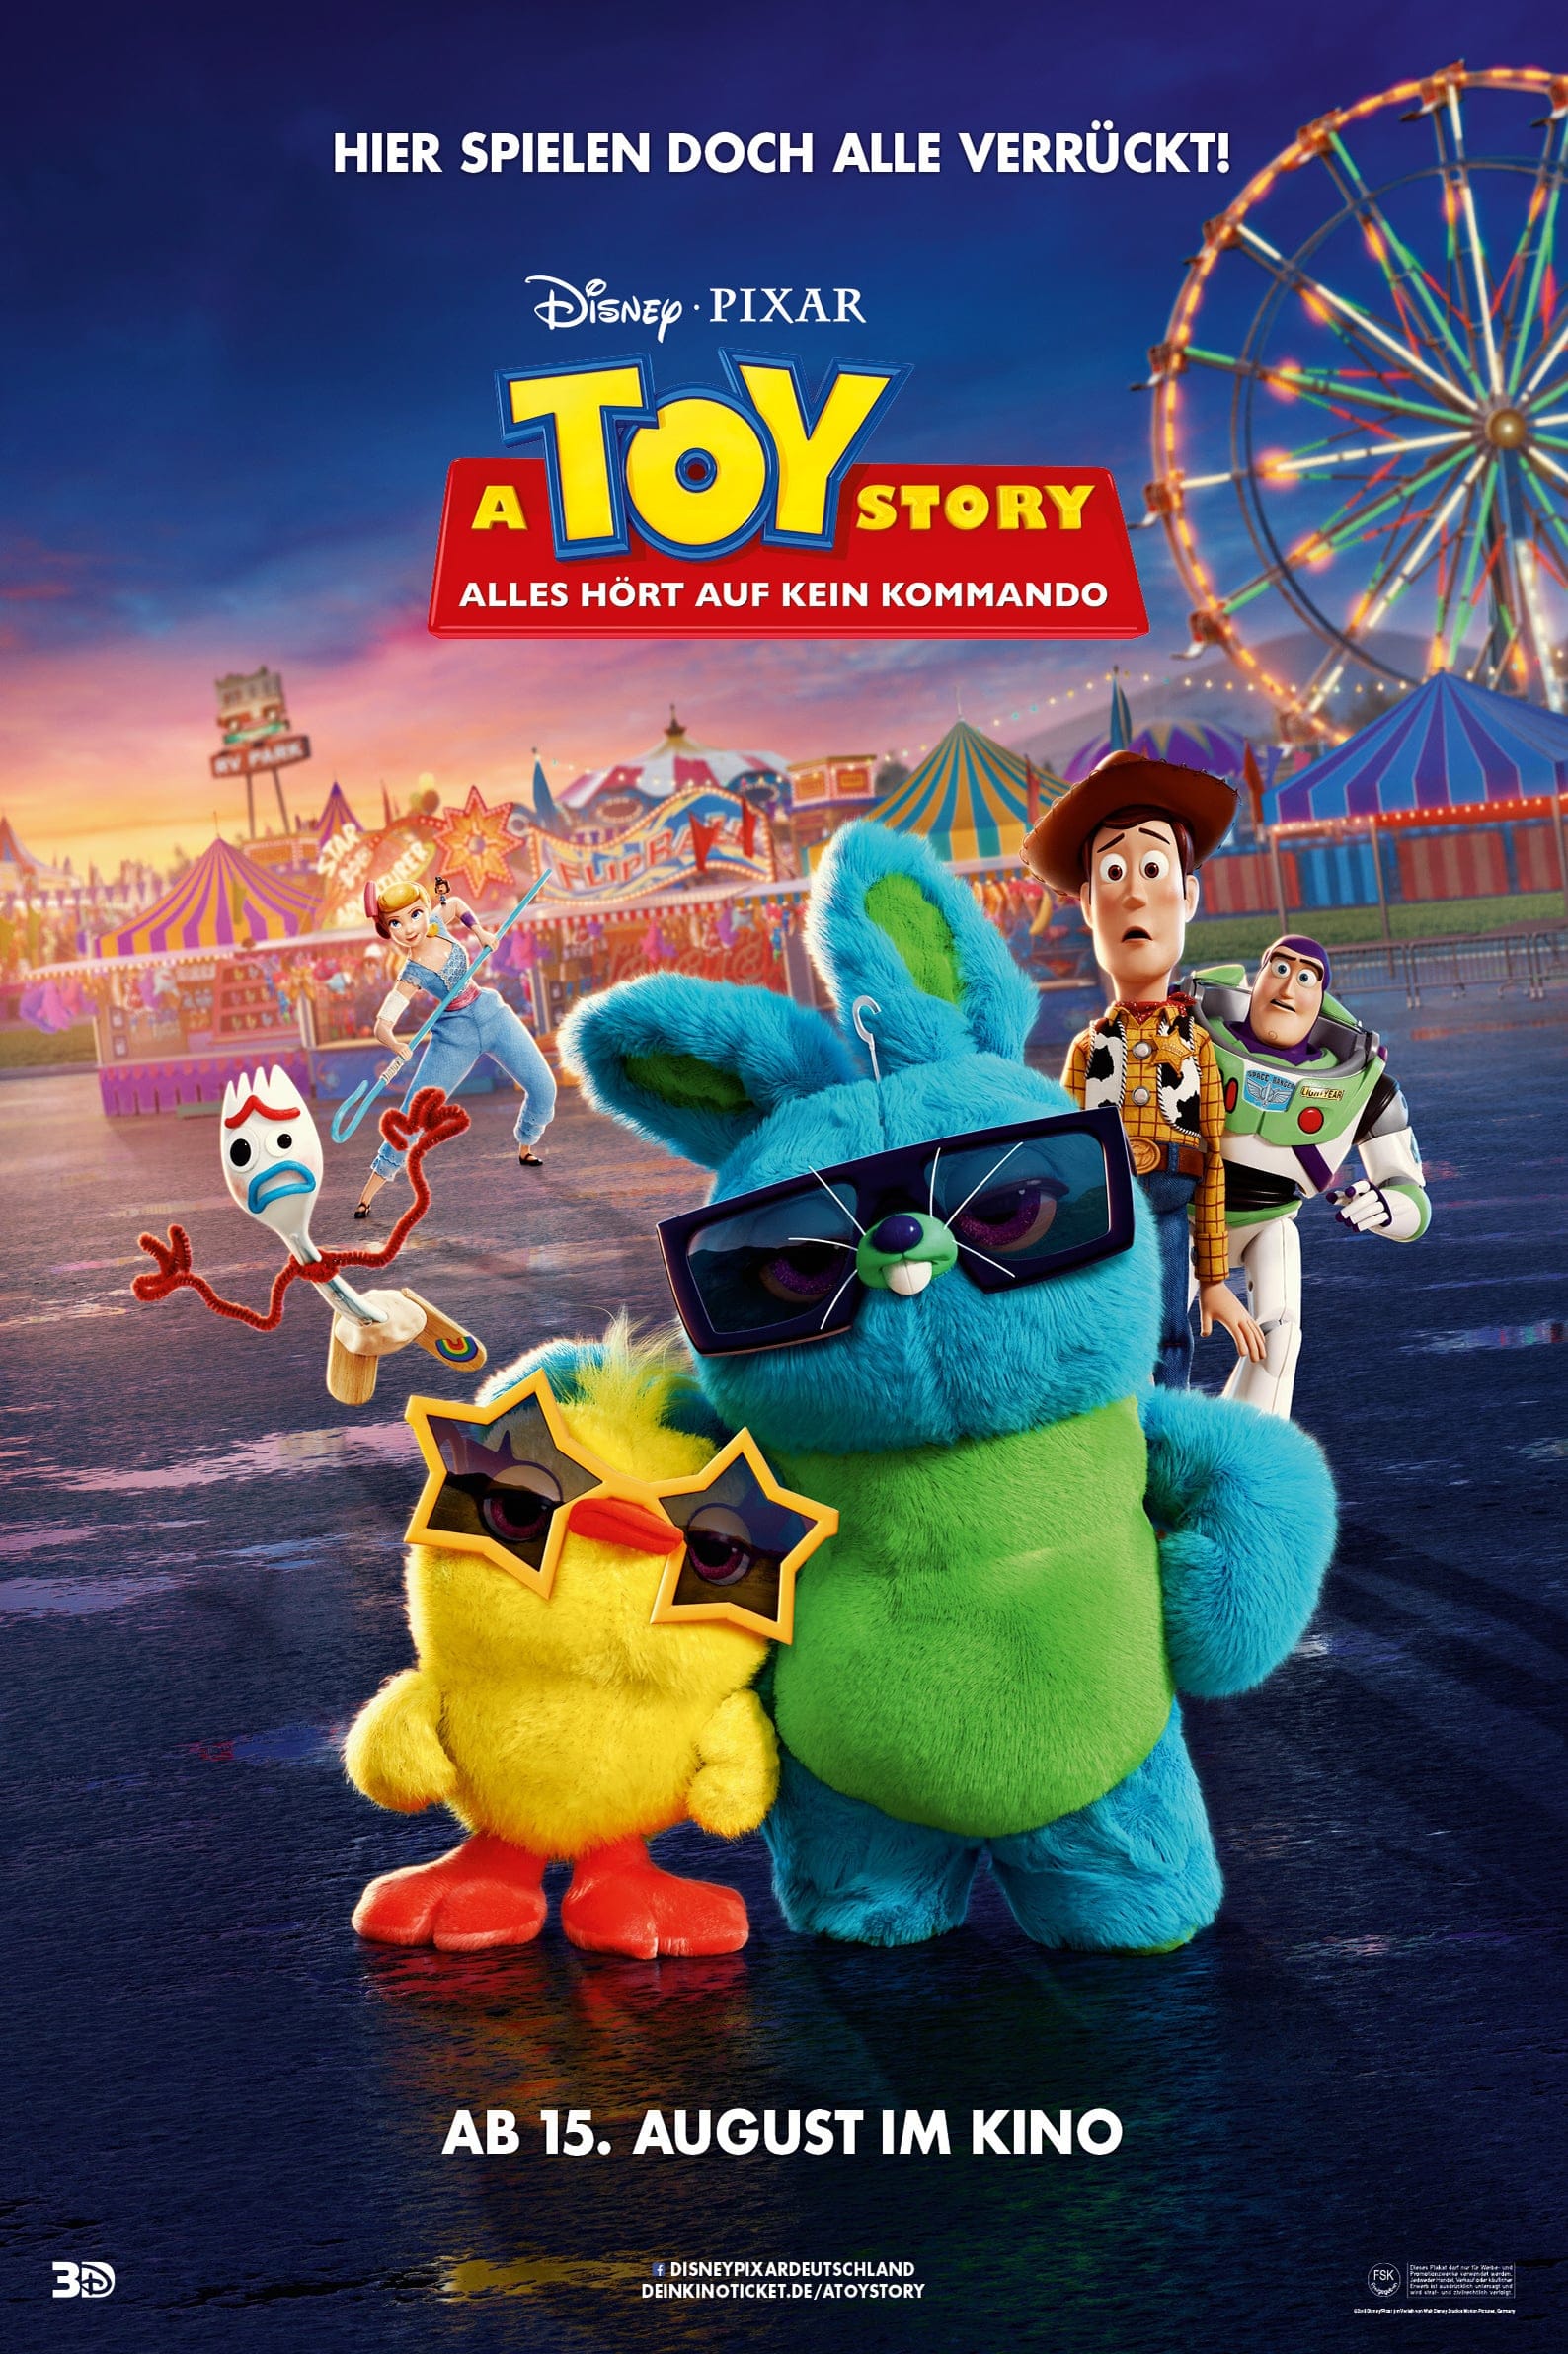 Plakat von "A Toy Story: Alles hört auf kein Kommando"